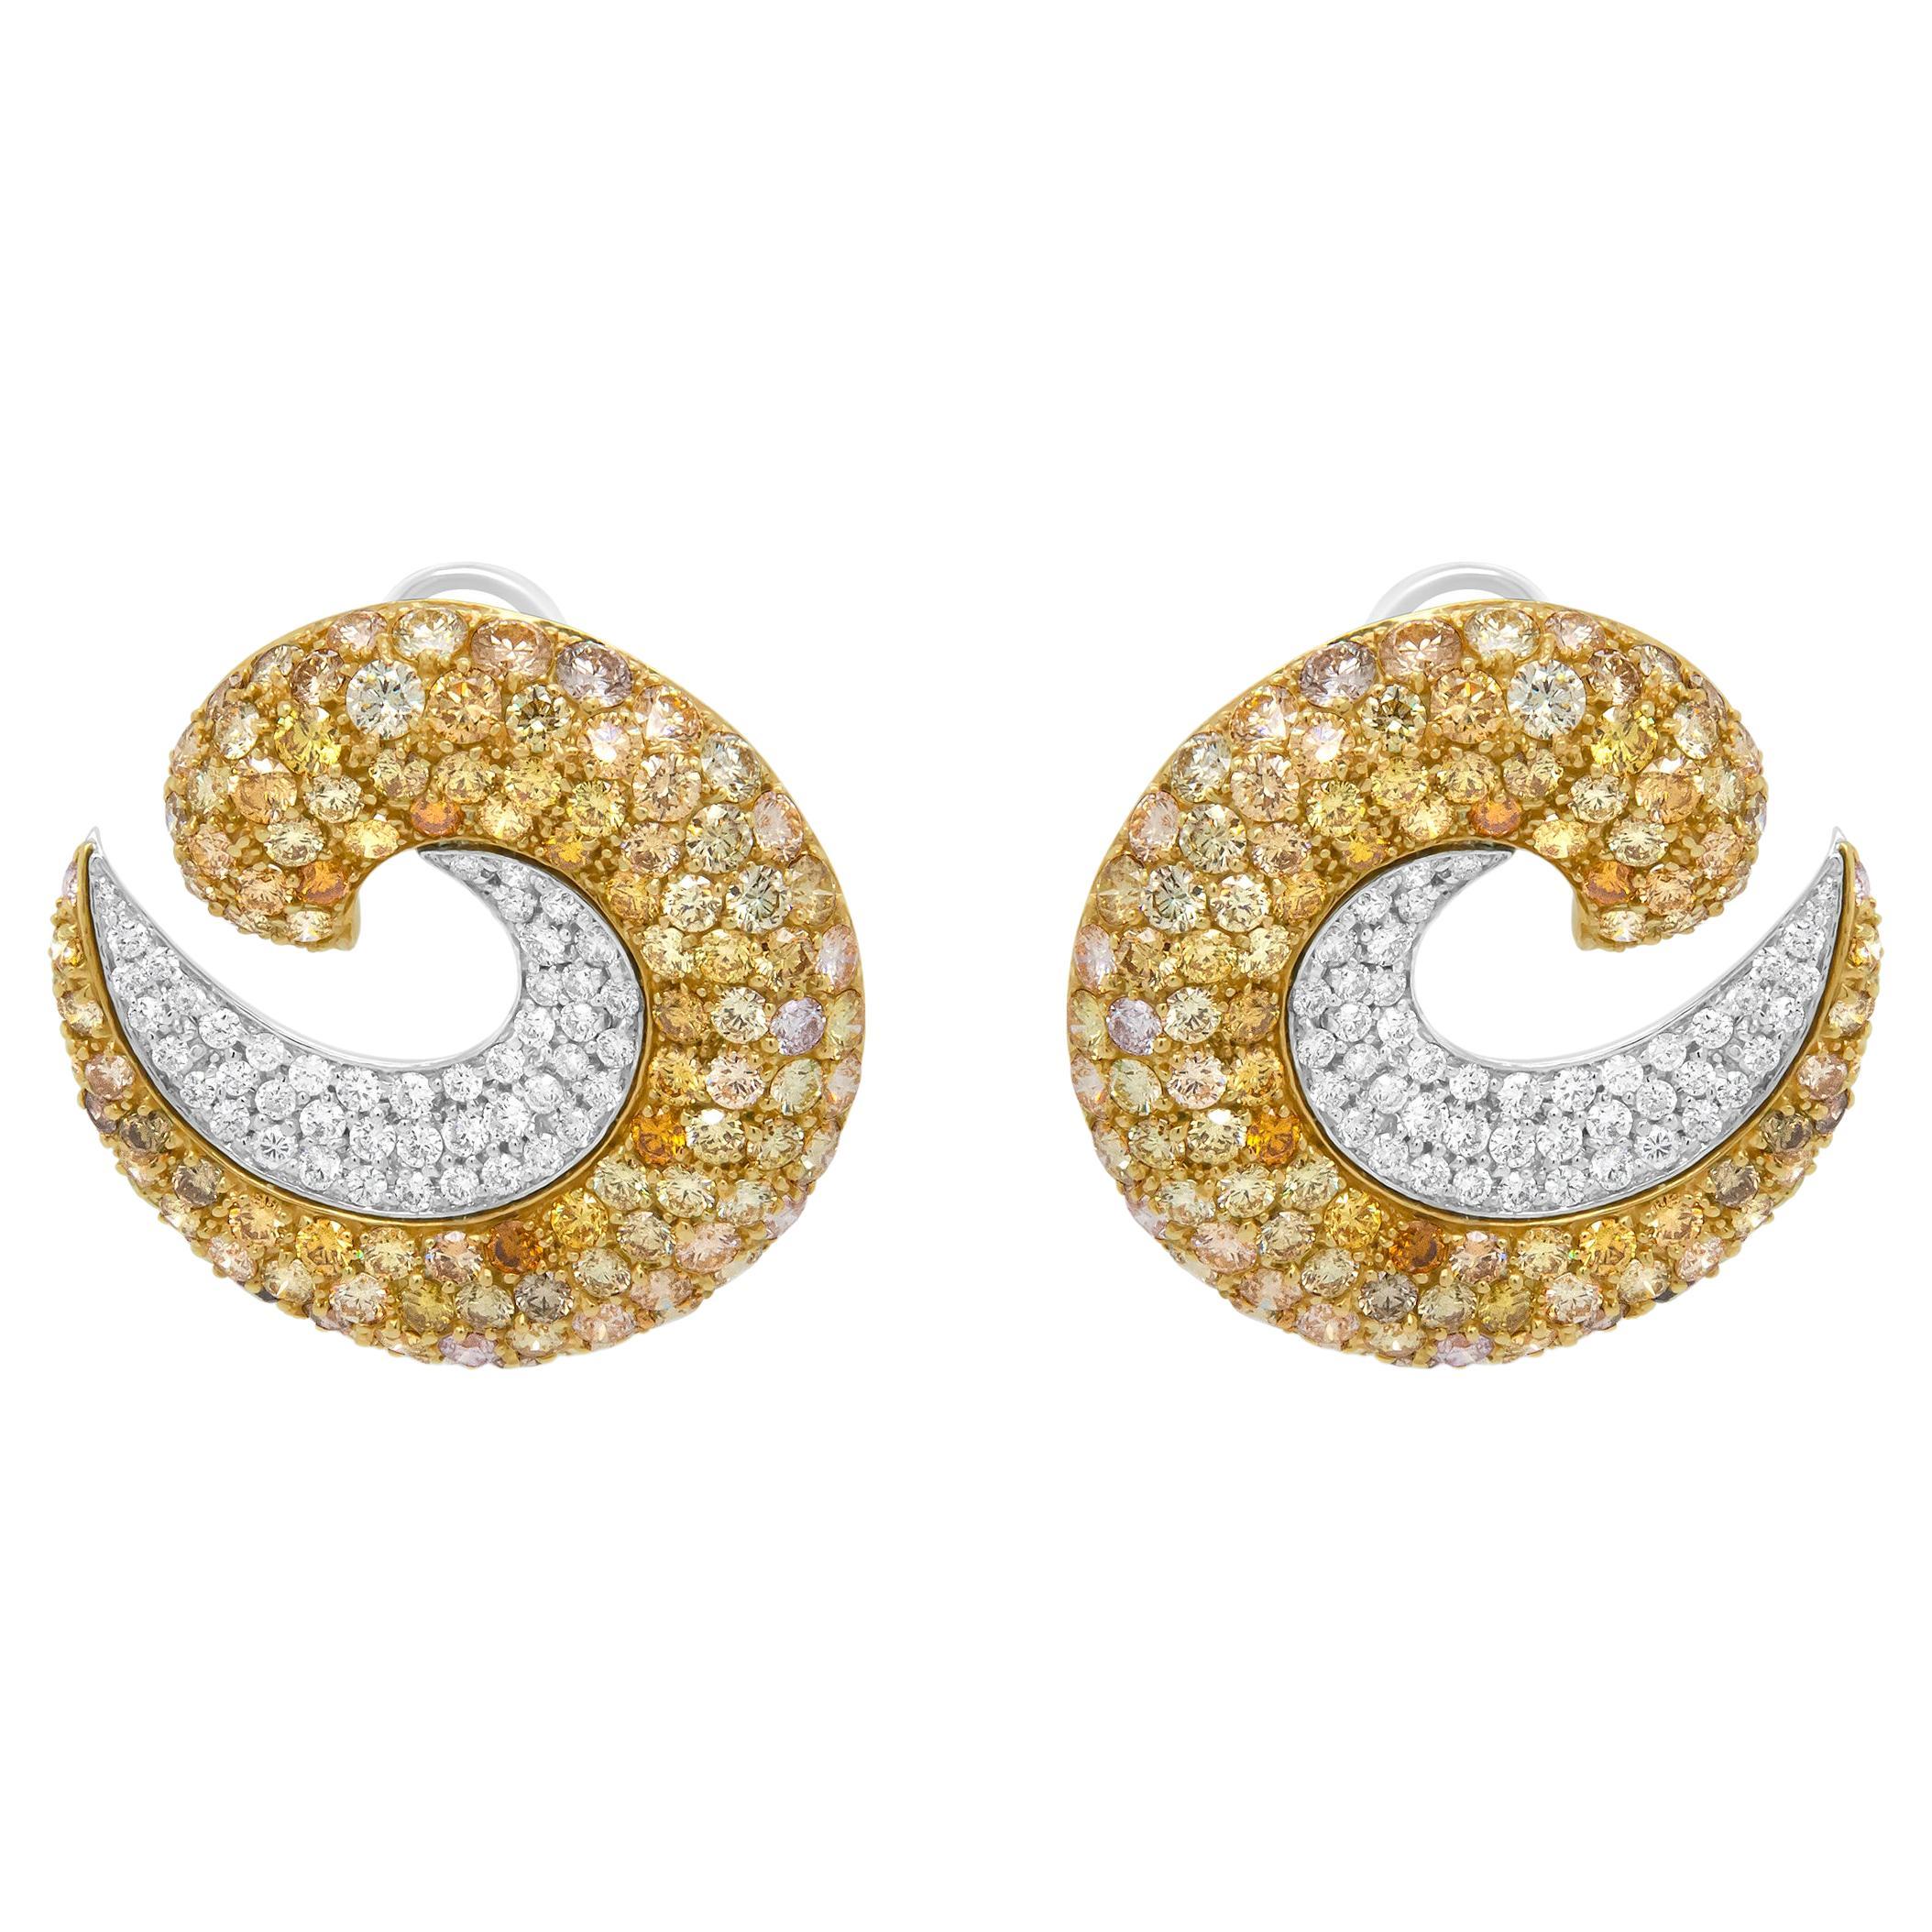 18K Yellow Gold 18.0 Carat Mixed Fancy Color Diamond Double Swirl Hoop Earrings